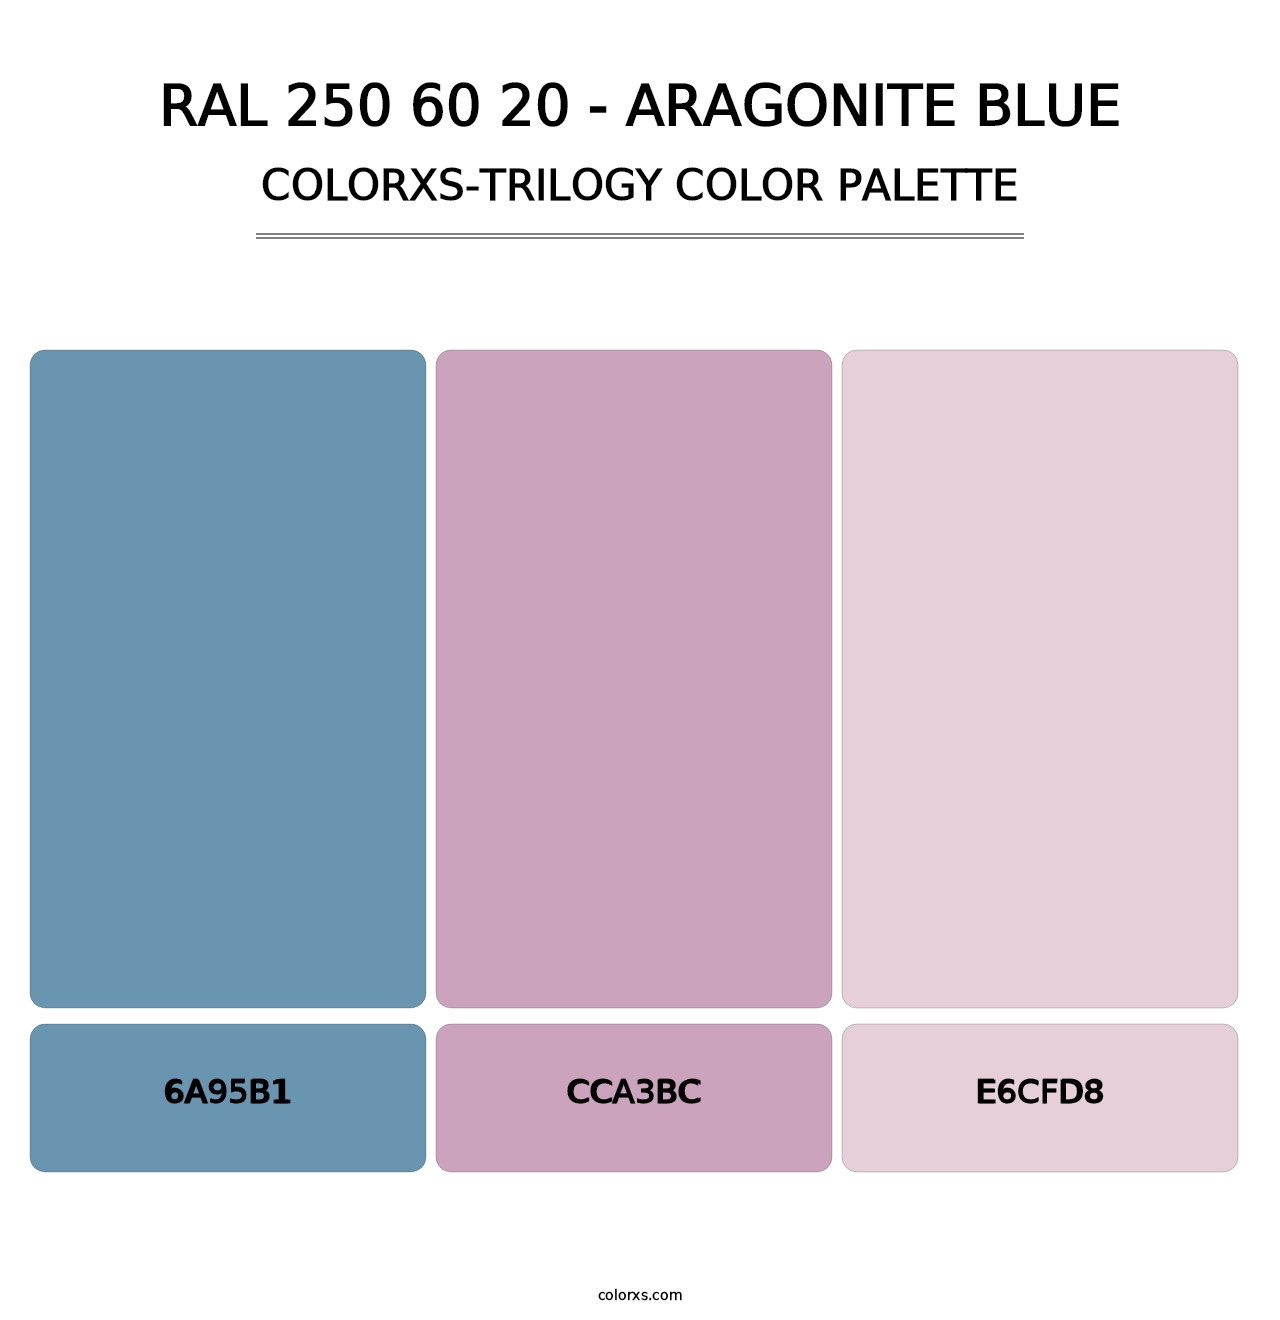 RAL 250 60 20 - Aragonite Blue - Colorxs Trilogy Palette